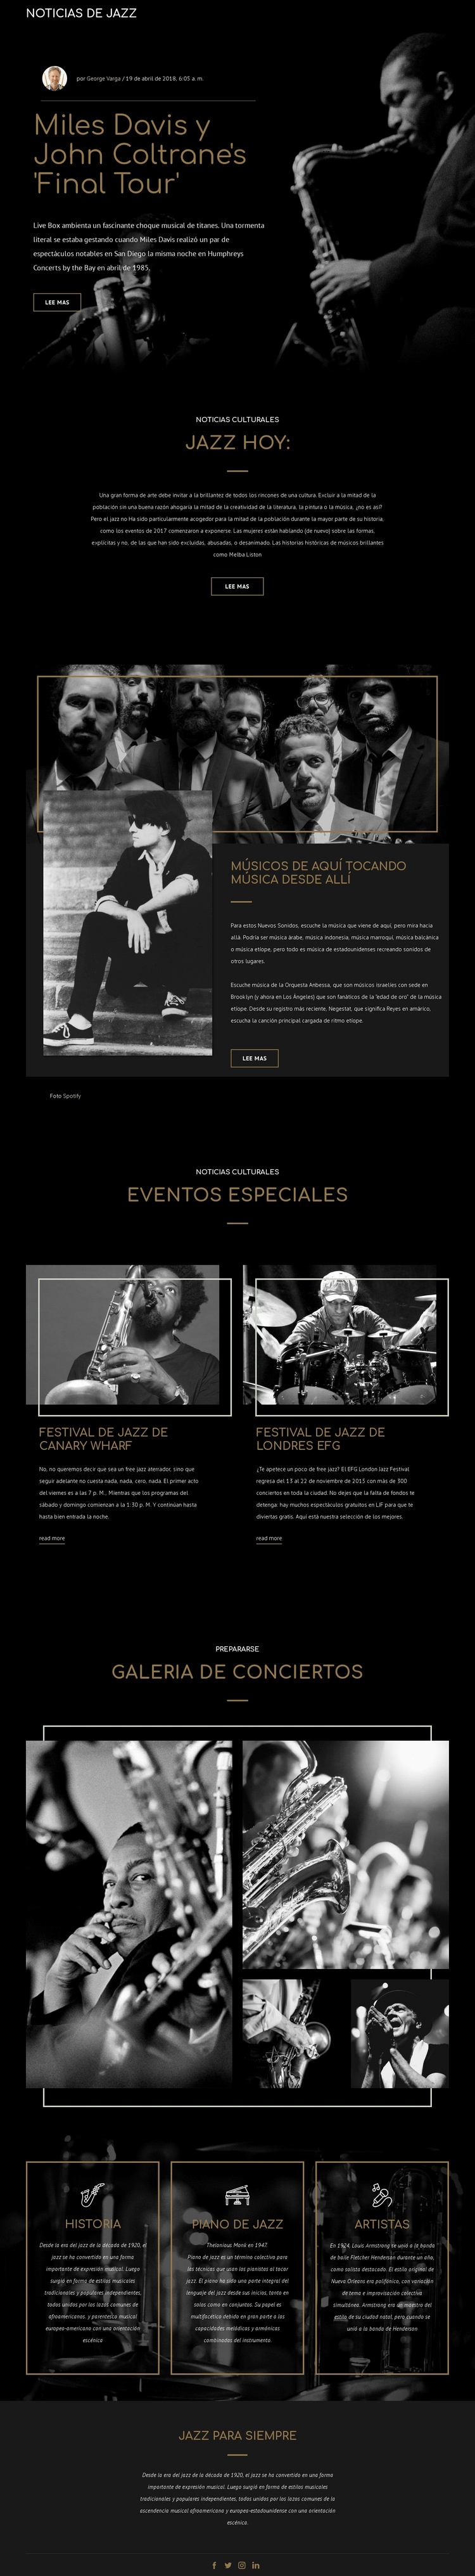 Legengs de la música jazz Maqueta de sitio web